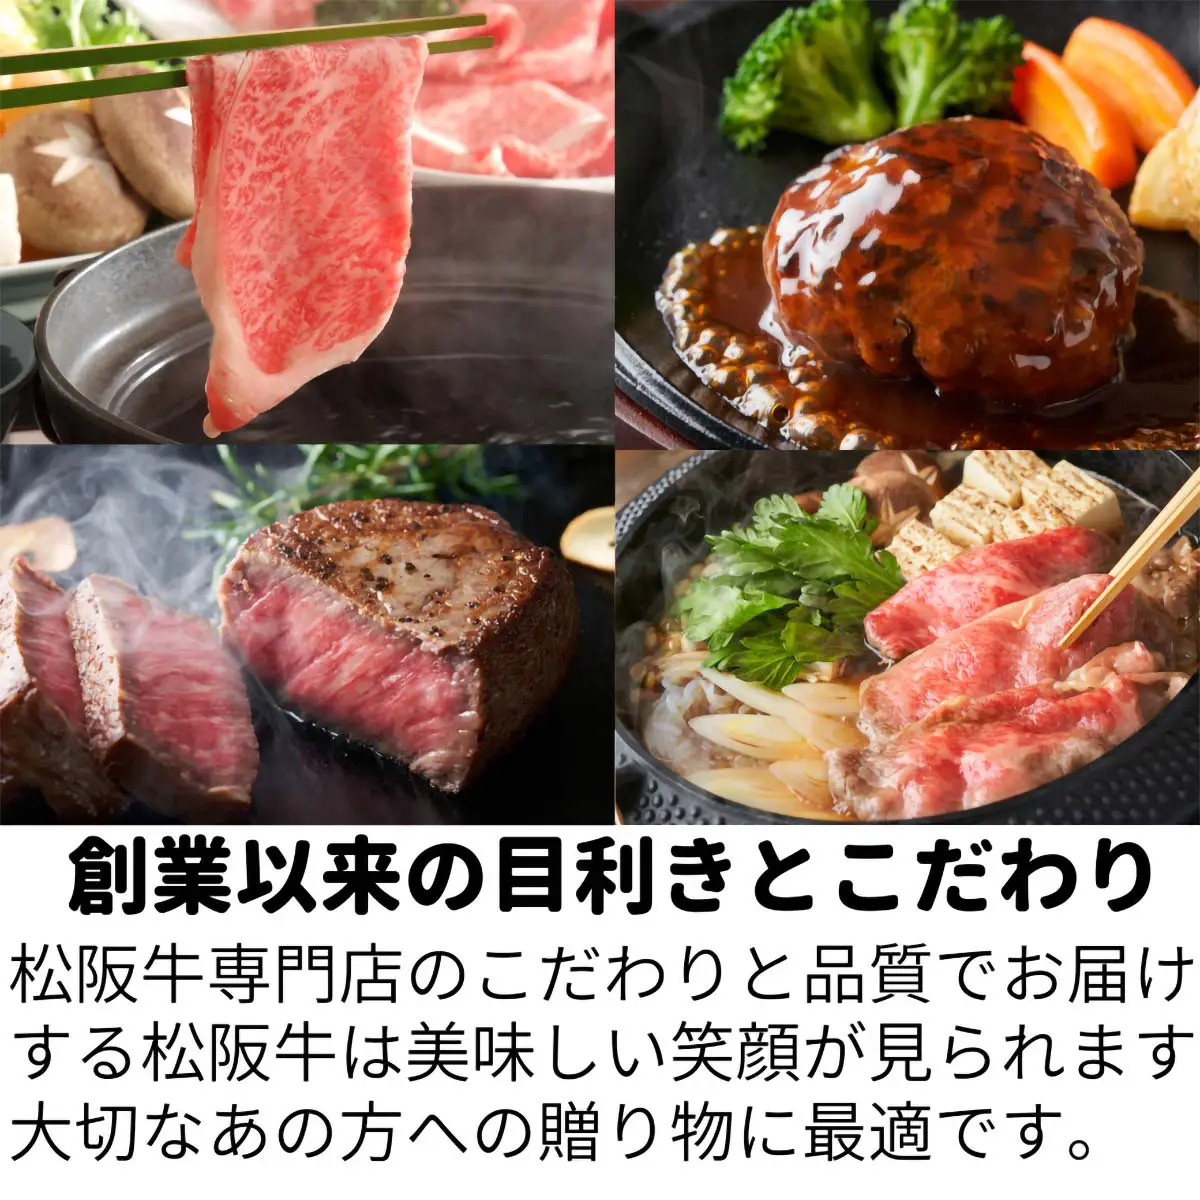 【結婚祝い】松阪牛お肉のギフト券Dタイプ